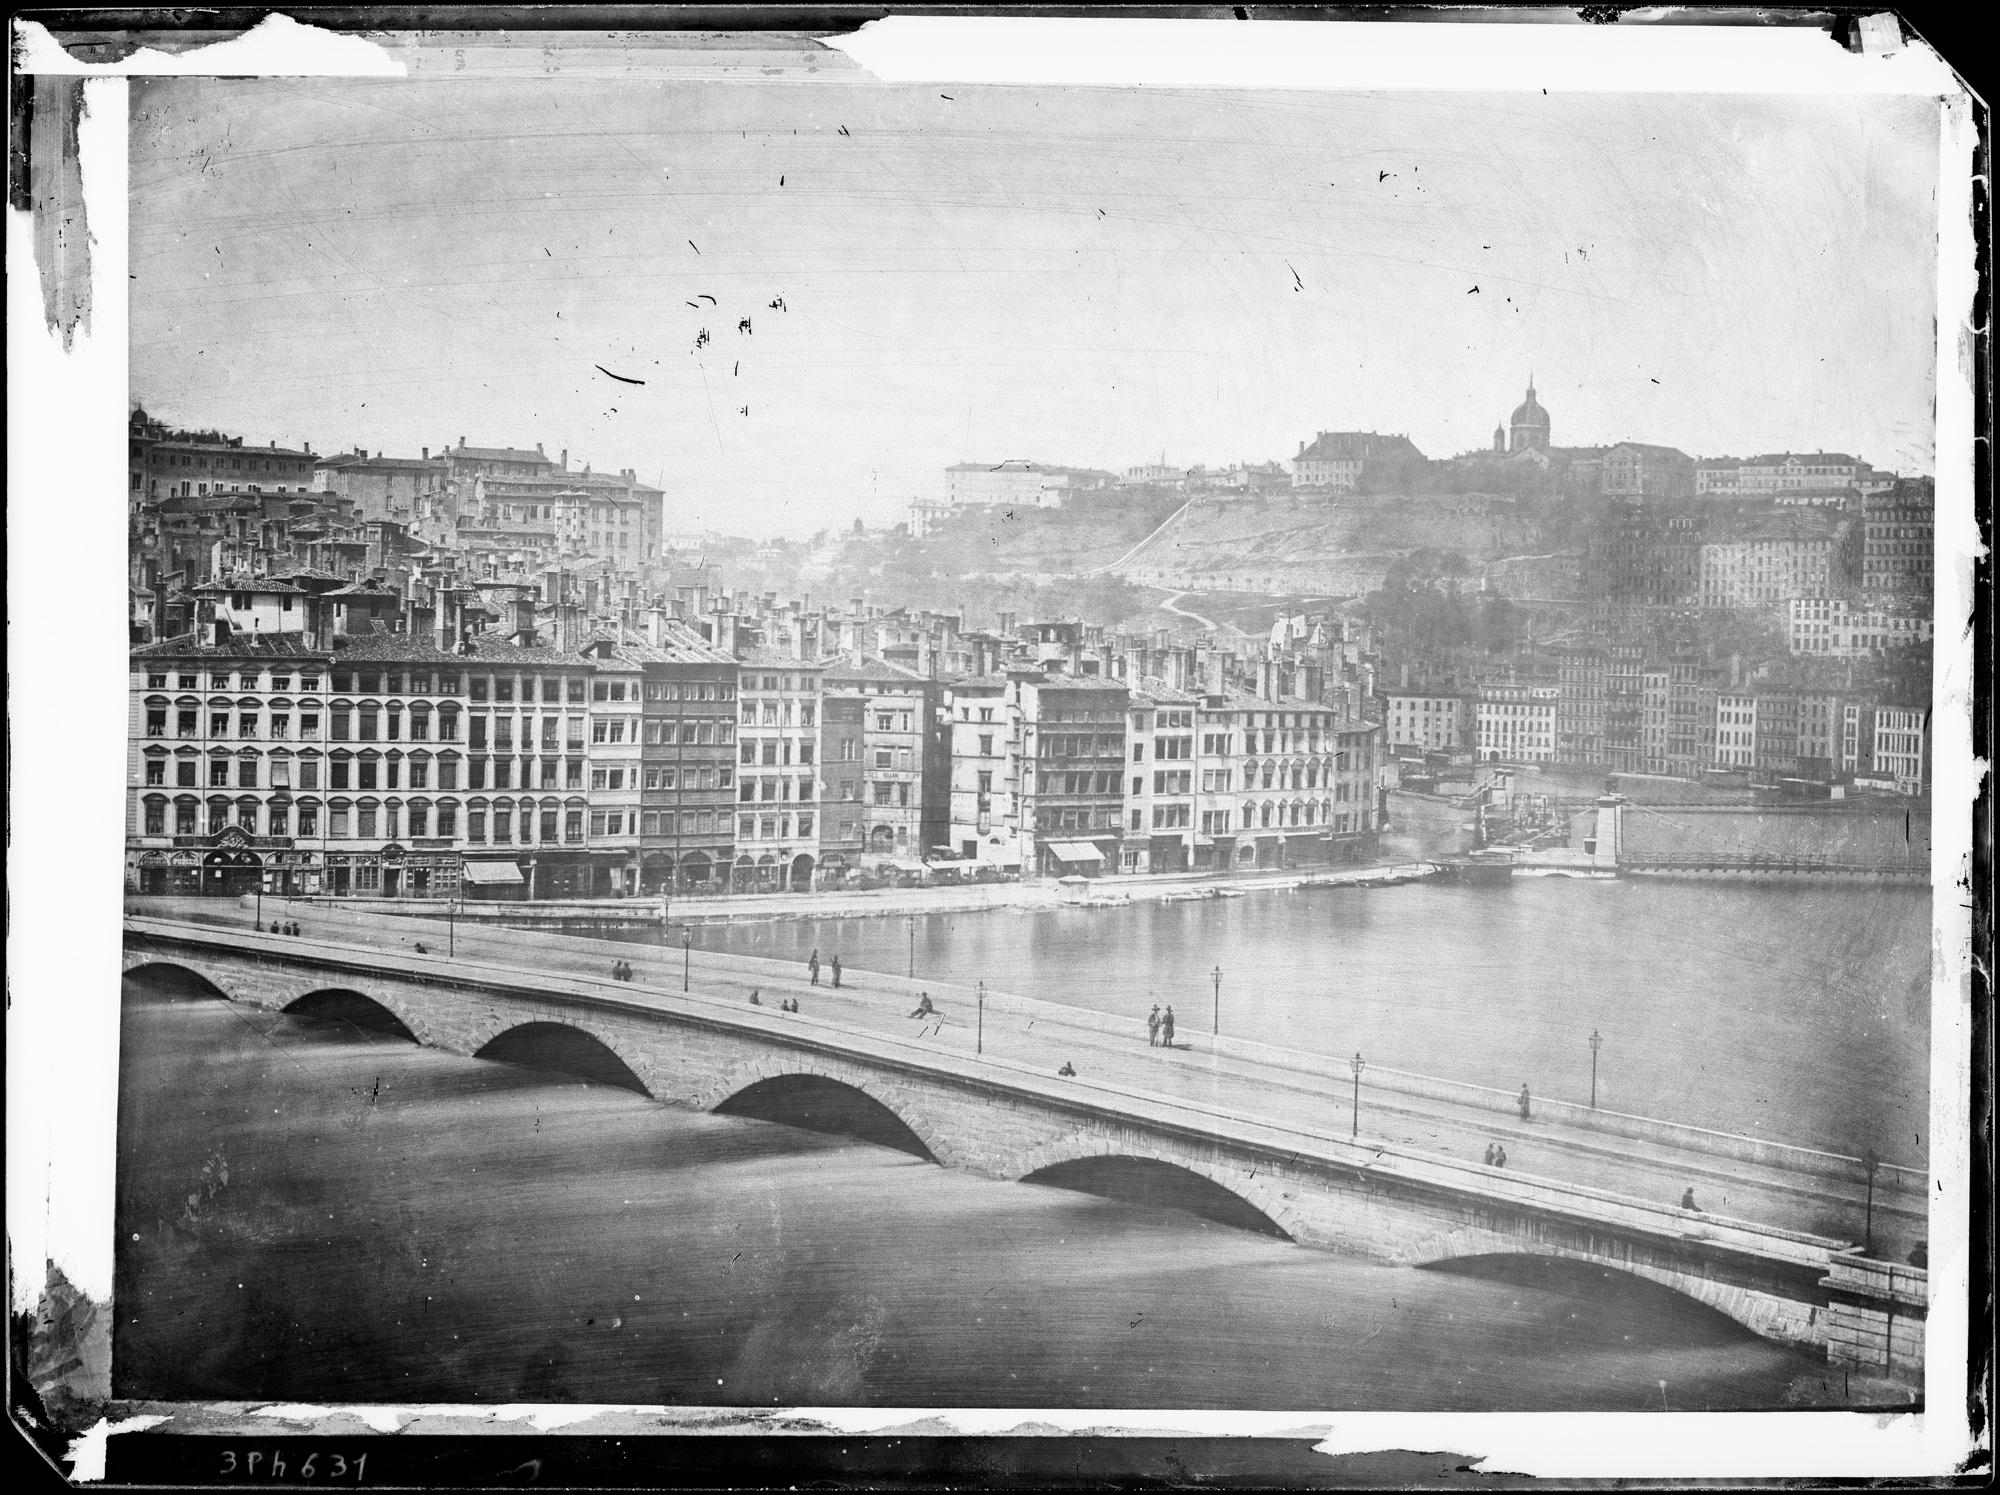 Inondation de Lyon en 1856, pont du Change : photo négative NB sur plaque de verre par Louis Froissart (vers 05/1856, cote : 3PH/631)